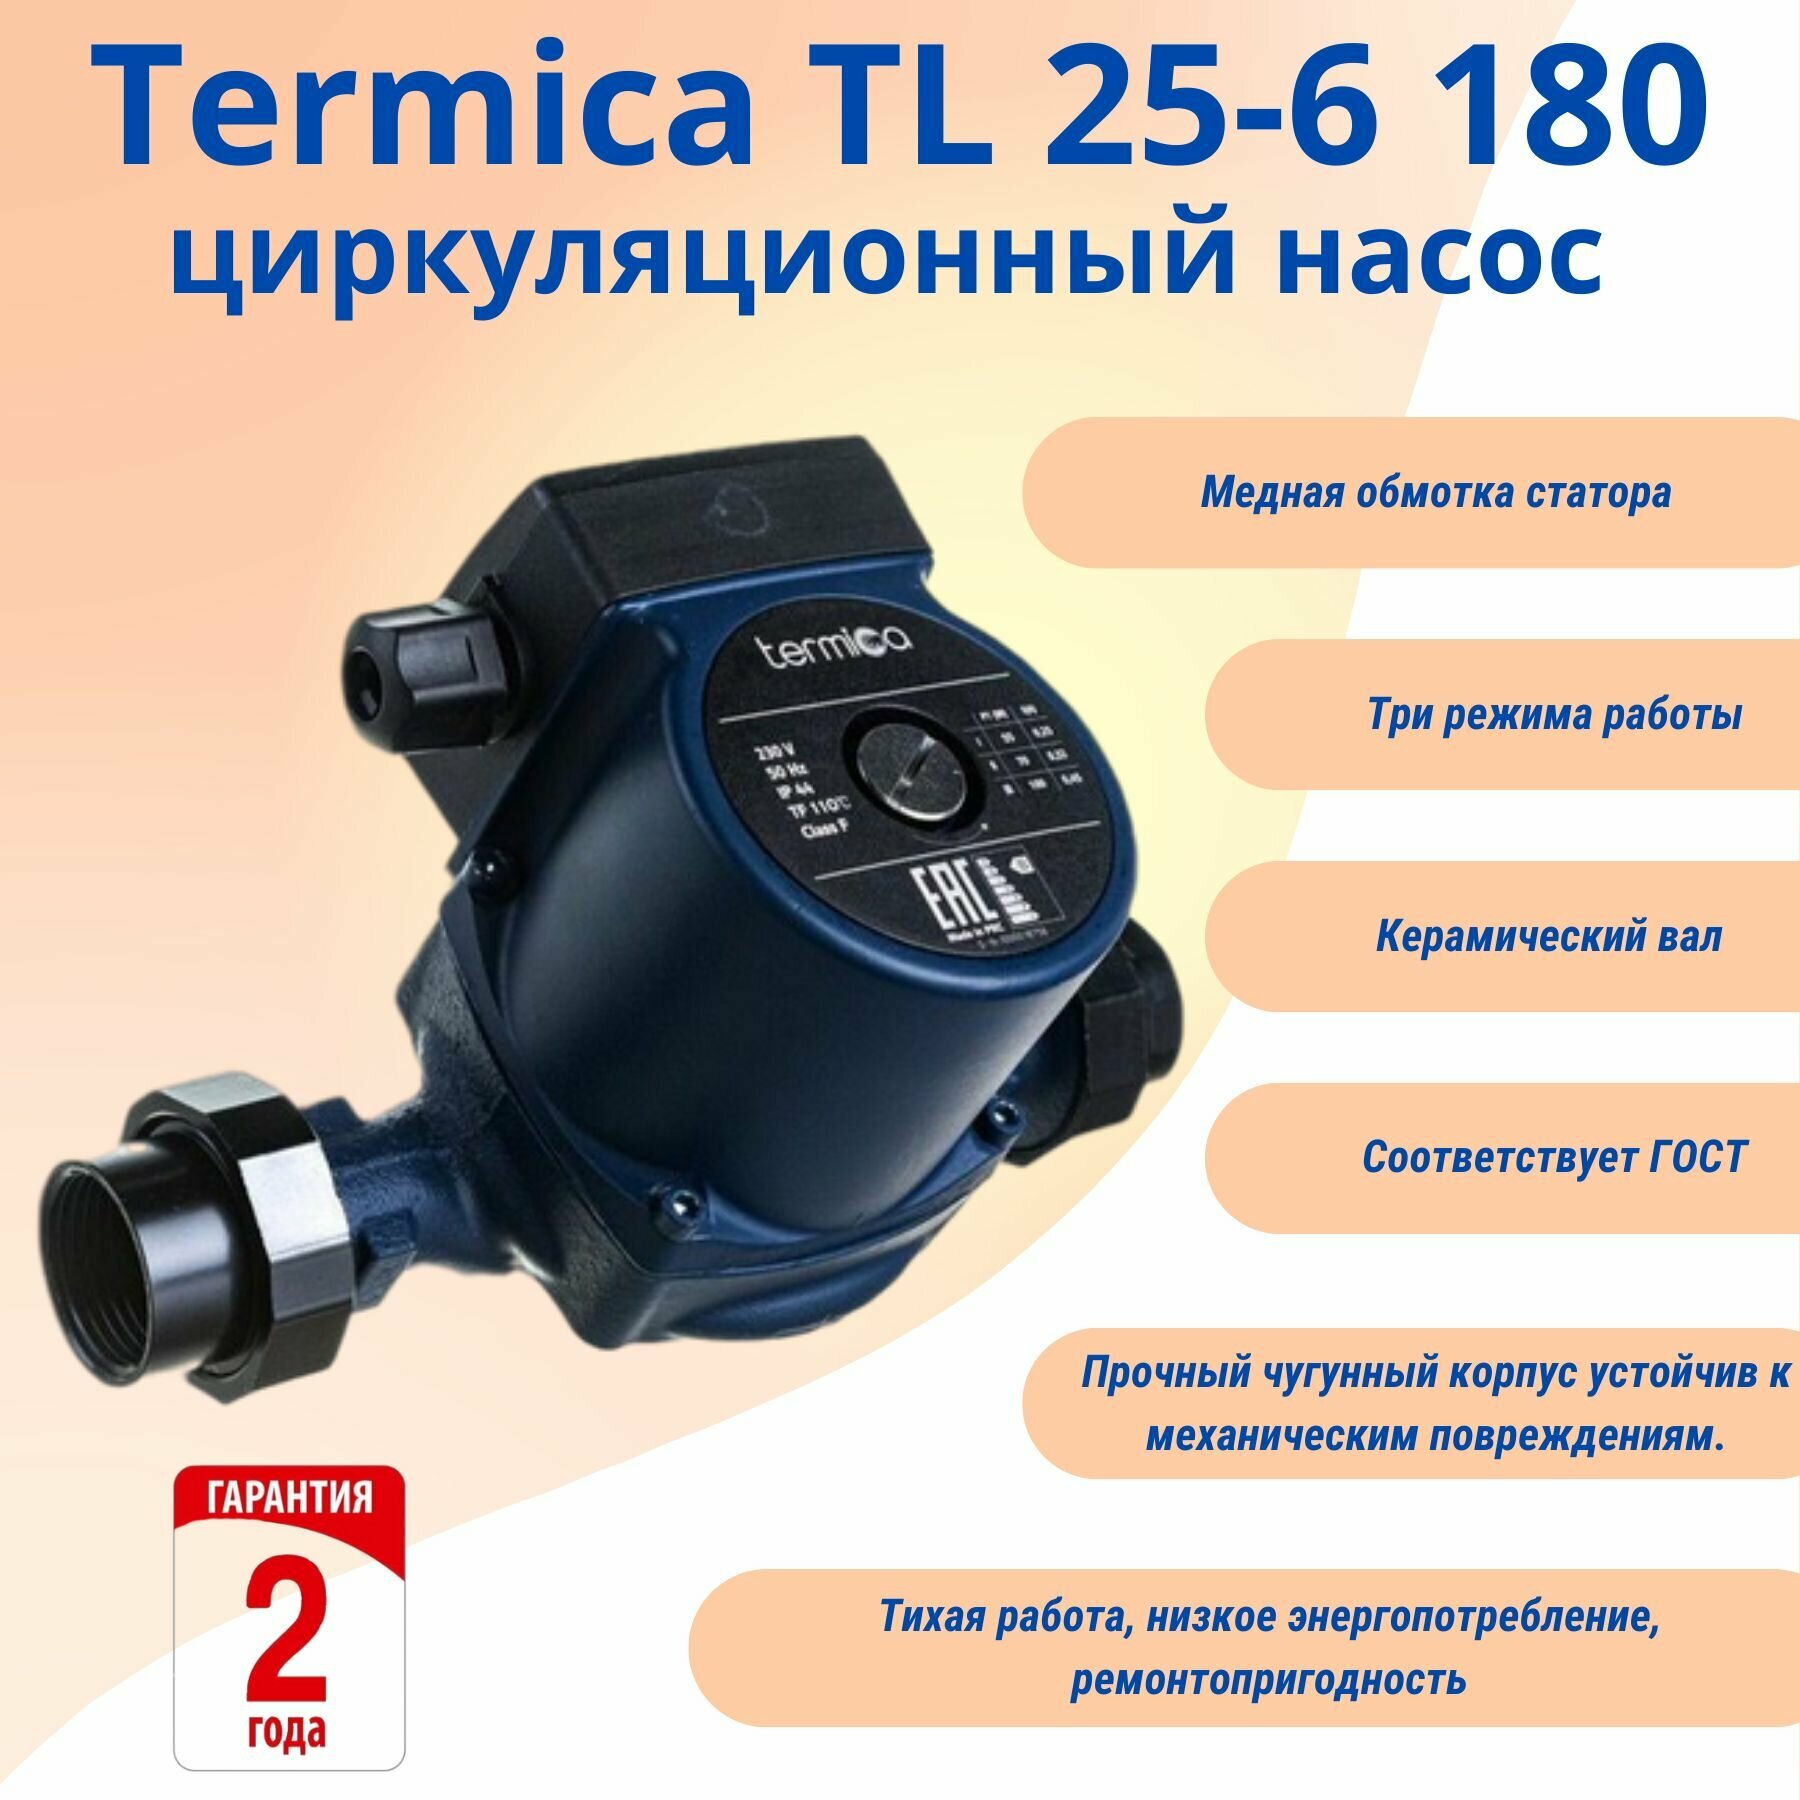 Termica TL 25-6 180 циркуляционный насос с переходными монтажними гайками 1 1/2"-1" (без провода)